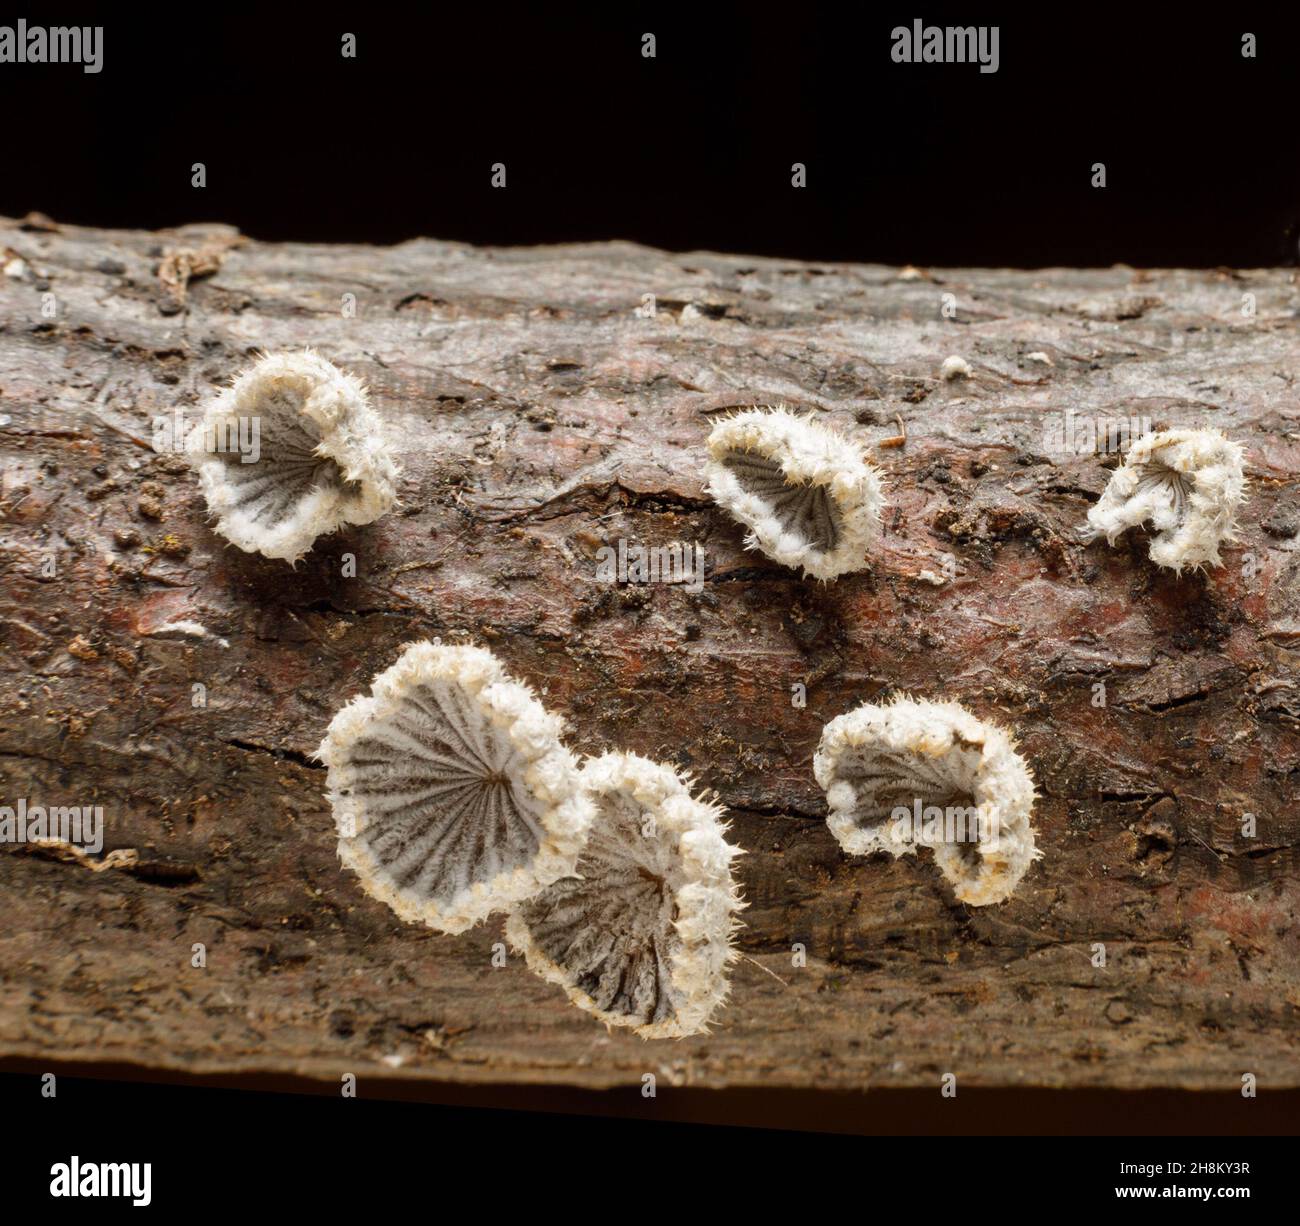 La commune de Schizophyllum est un champignon à branchies en deux parties qui pousse sur des billes mortes.Aucun intérêt culinaire.Etat de New York, Etats-Unis. Banque D'Images